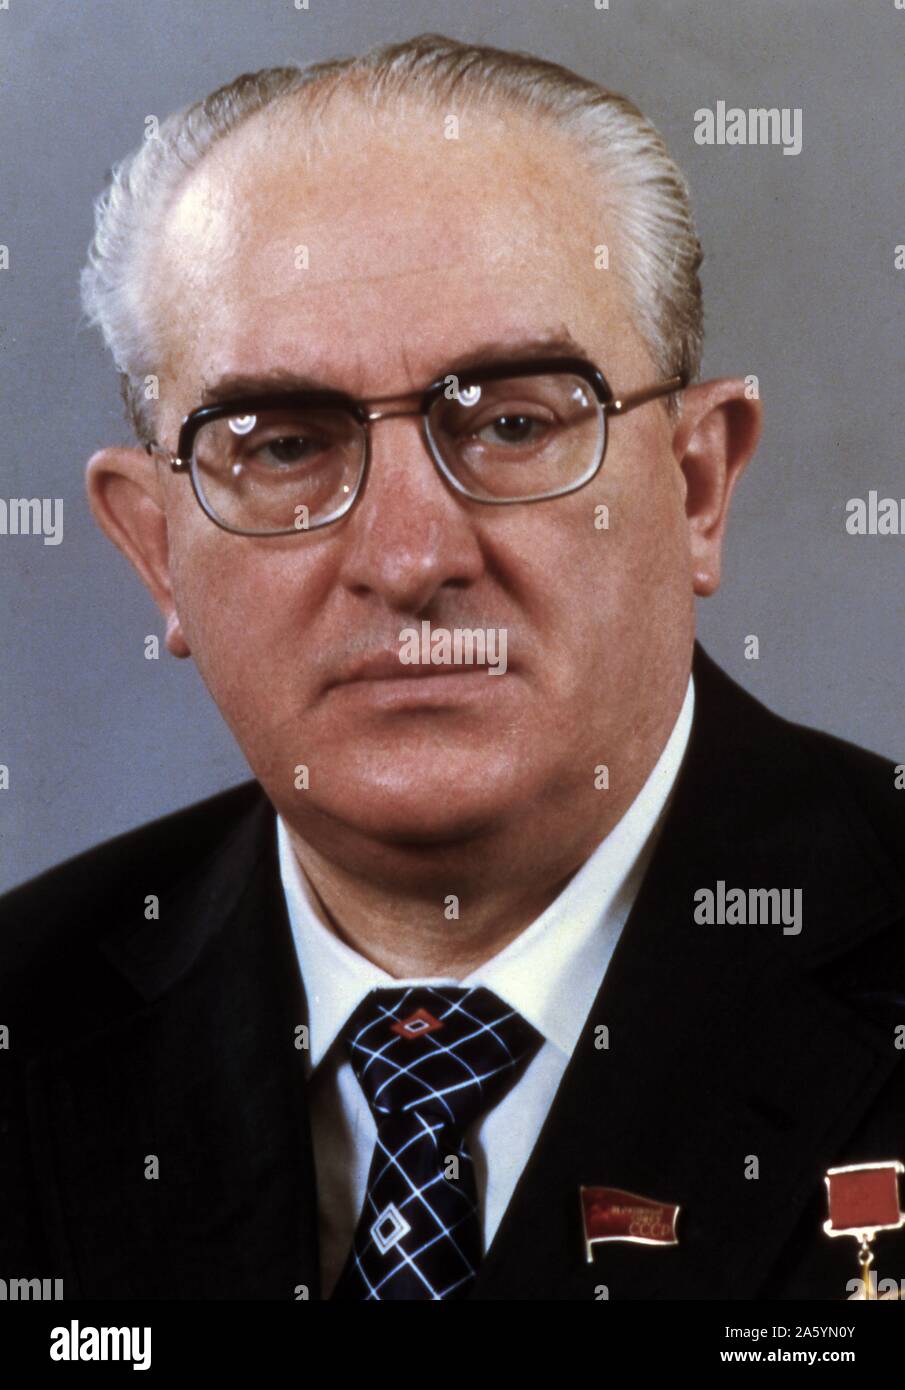 Juri Wladimirowitsch Andropow 1914 â € ì 9. Februar 1984), sowjetischer Politiker und Generalsekretär der Kommunistischen Partei der Sowjetunion vom 12. November 1982 bis zu seinem Tod 15 Monate später, am 9. Februar 1984. Stockfoto